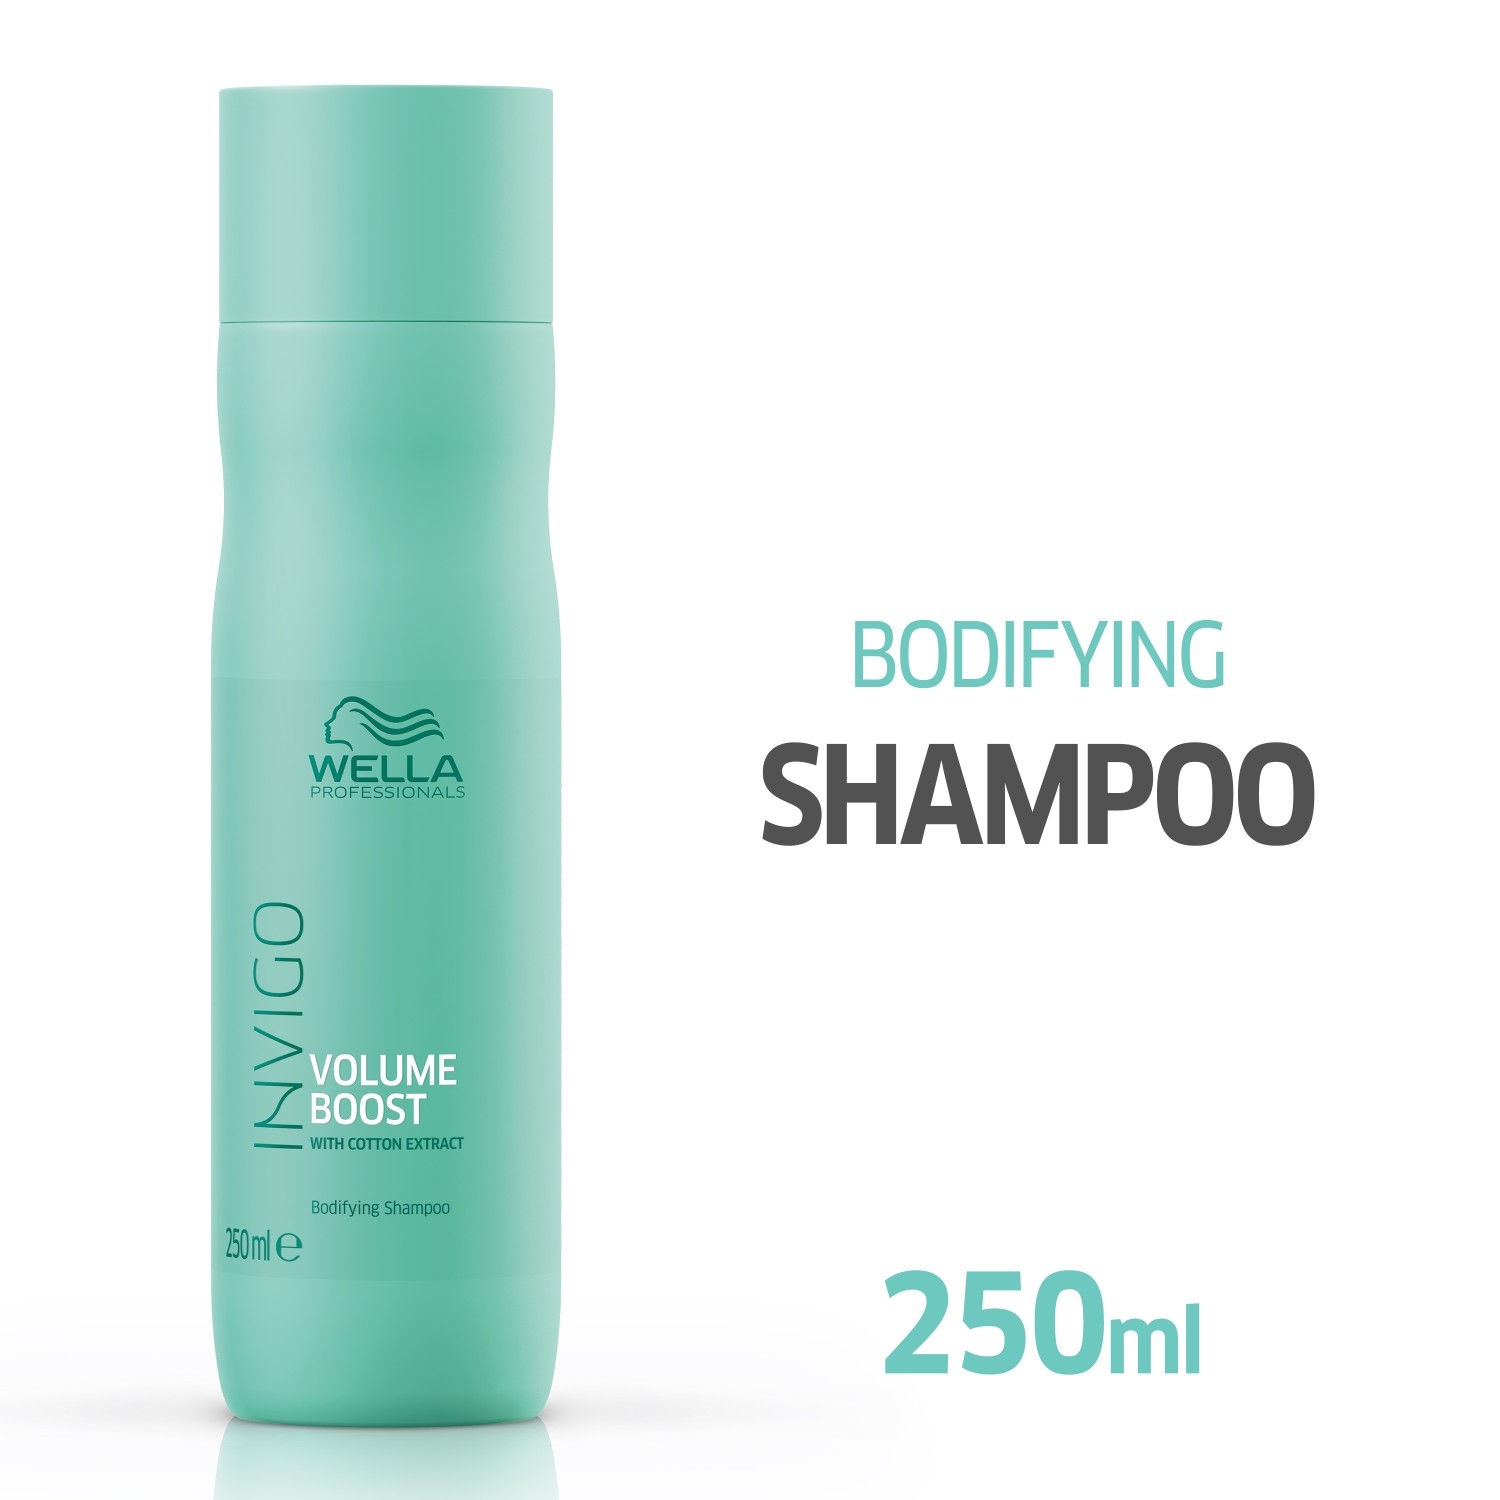 Wella Professionals INVIGO Volume Boost Bodifying Shampoo